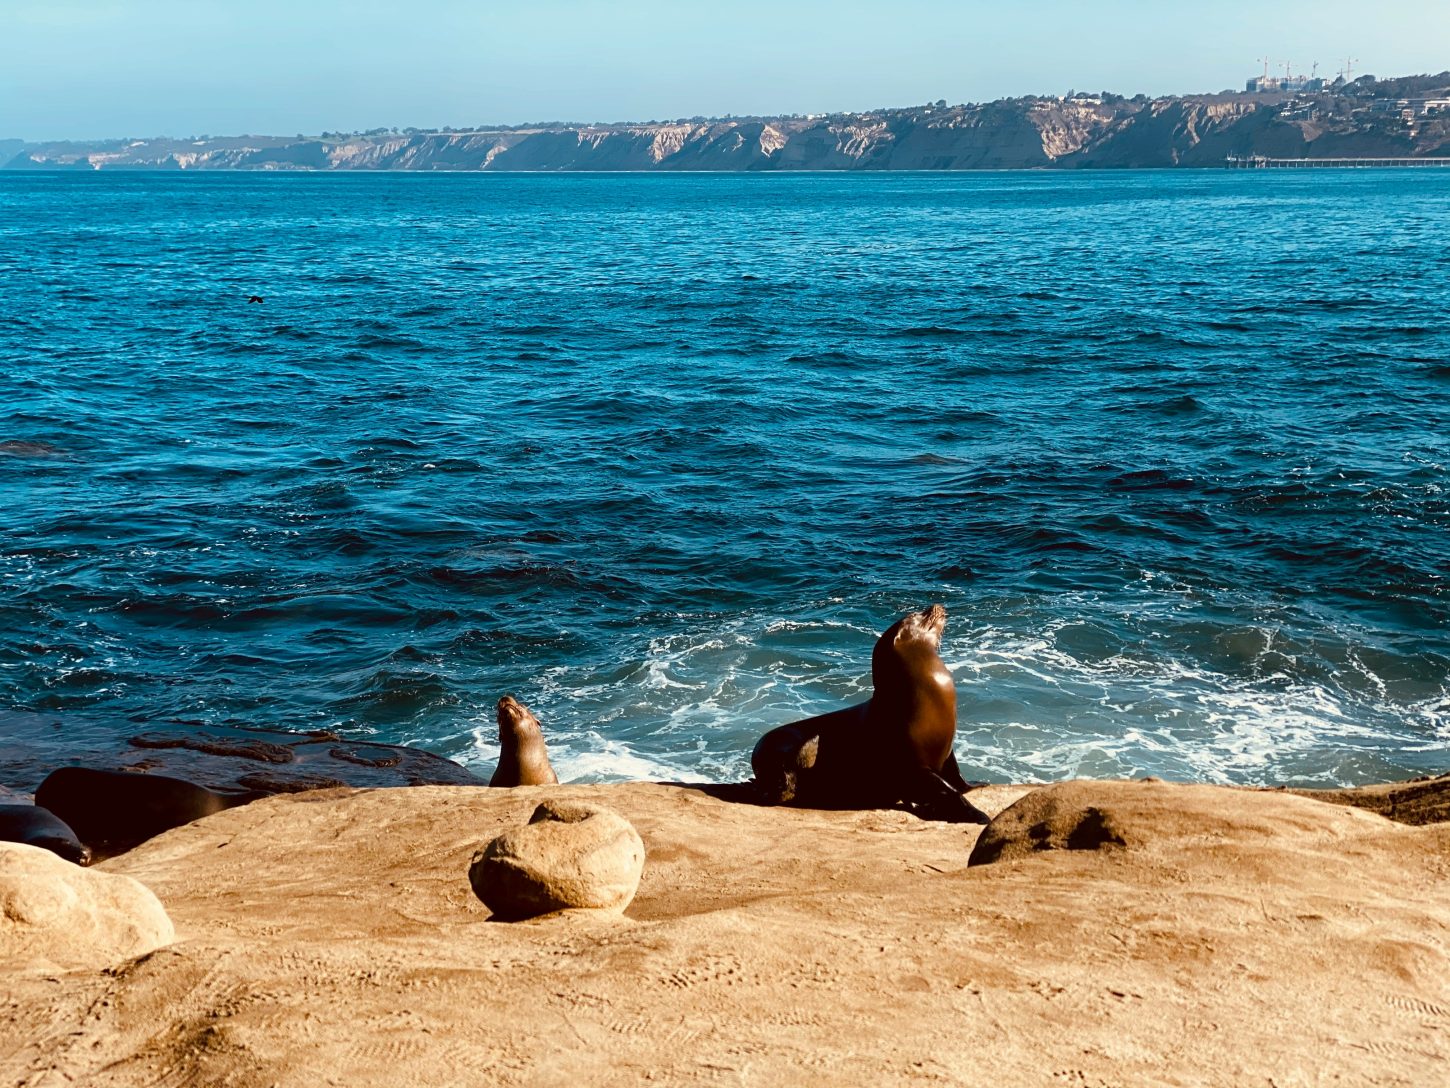 La Jolla Cove, La Jolla California. Sea lions on the rocks